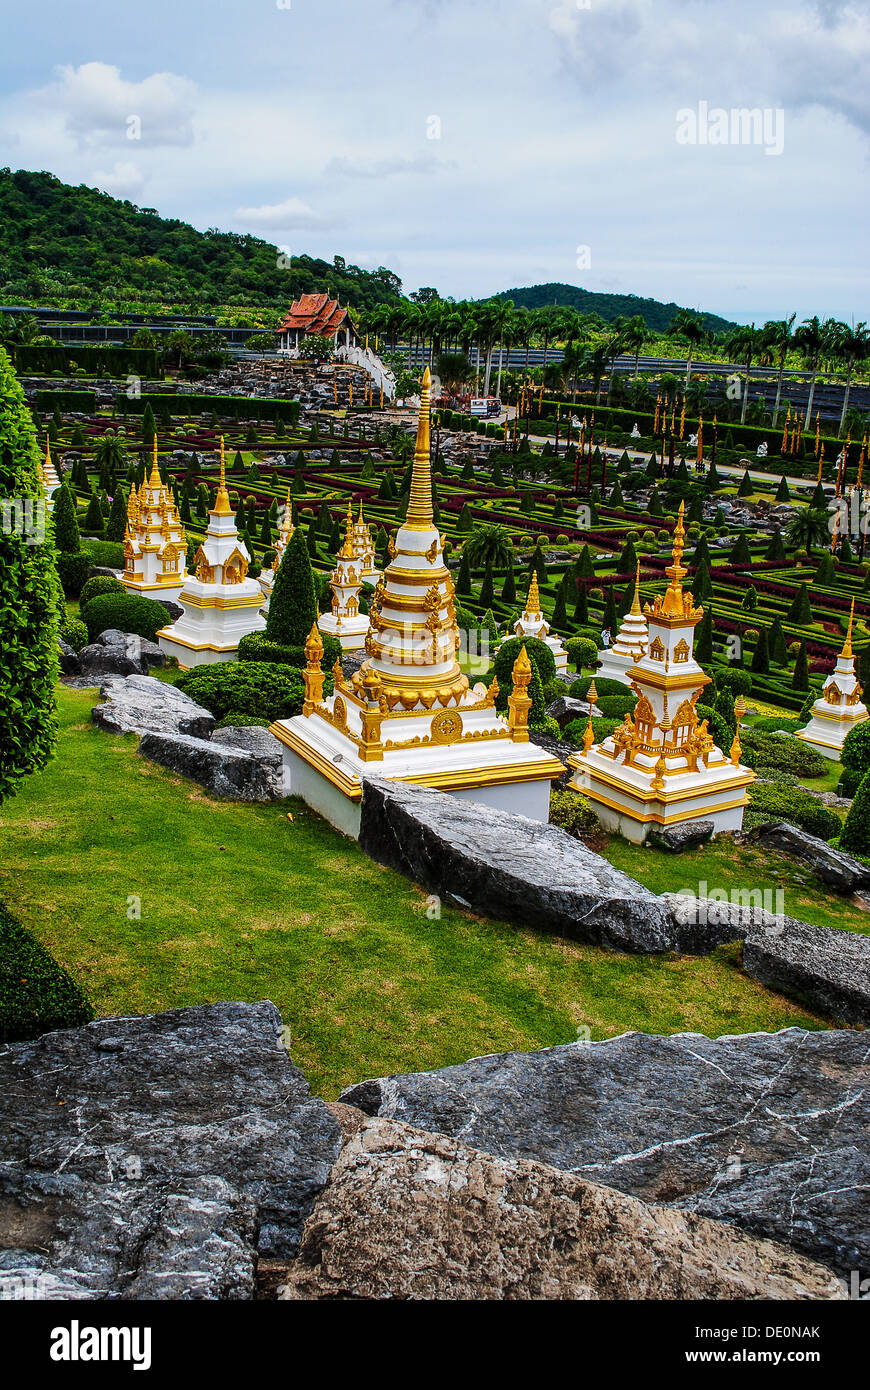 Jardins tropicaux de Nong Nooch près de Pattaya en Thaïlande Banque D'Images